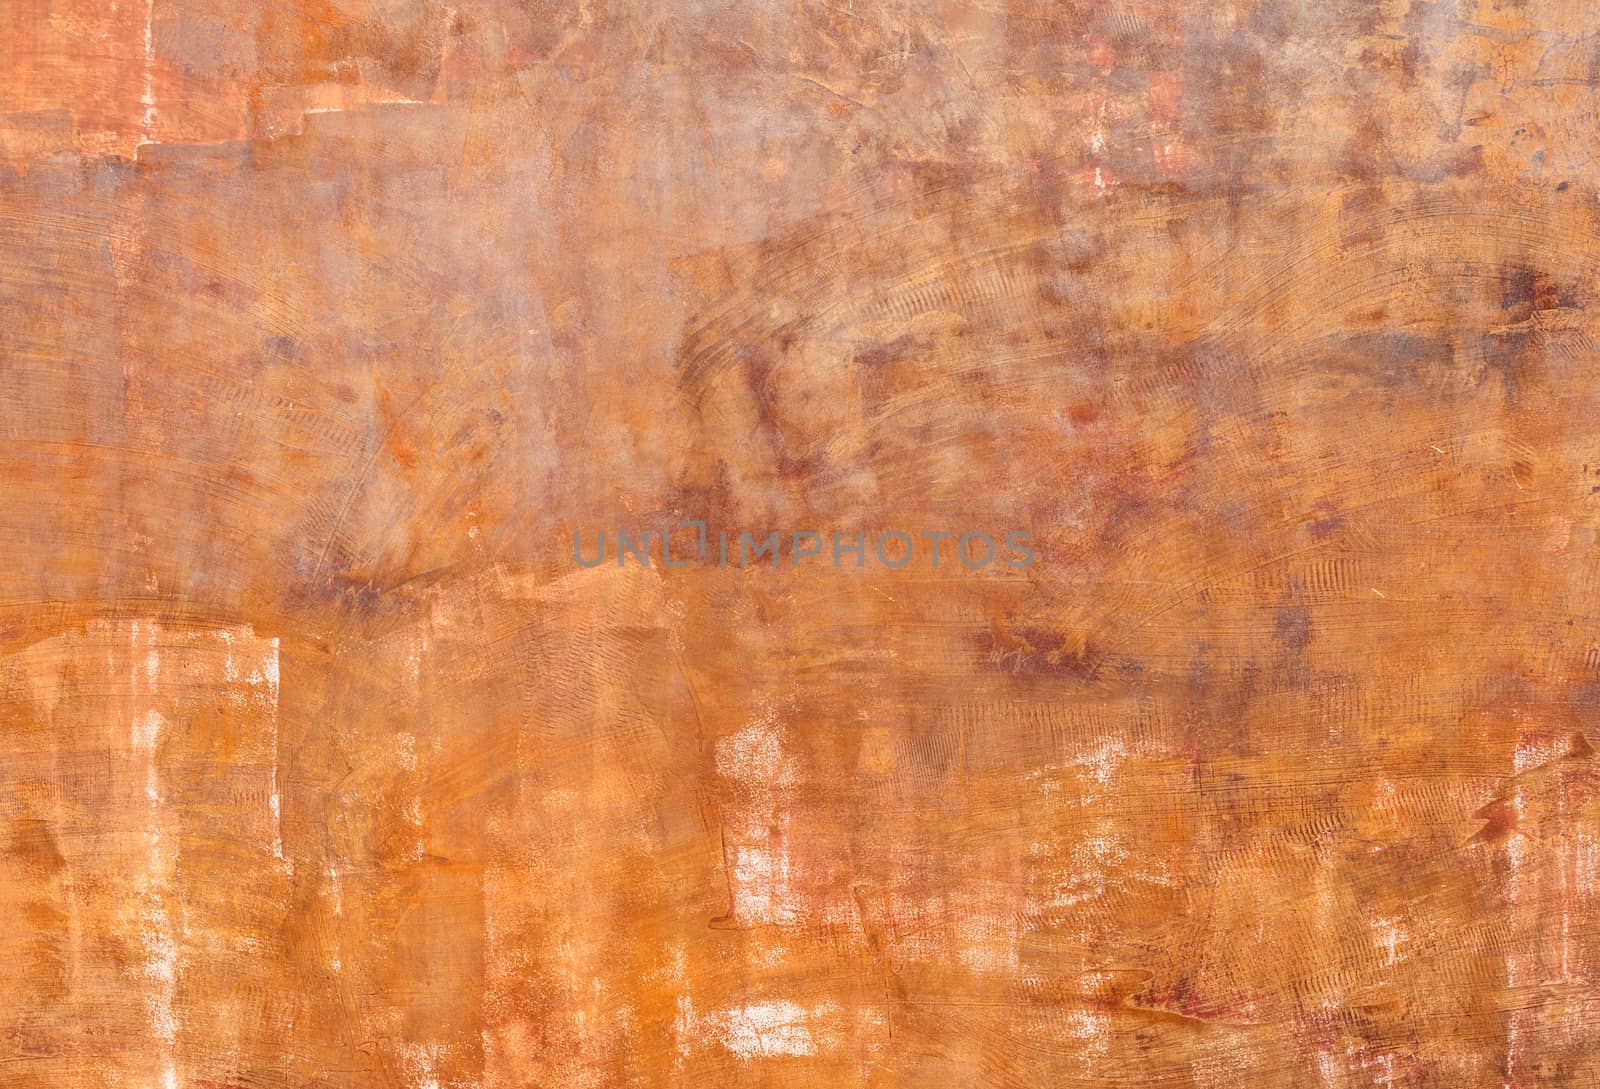 Grunge orange red wall background texture